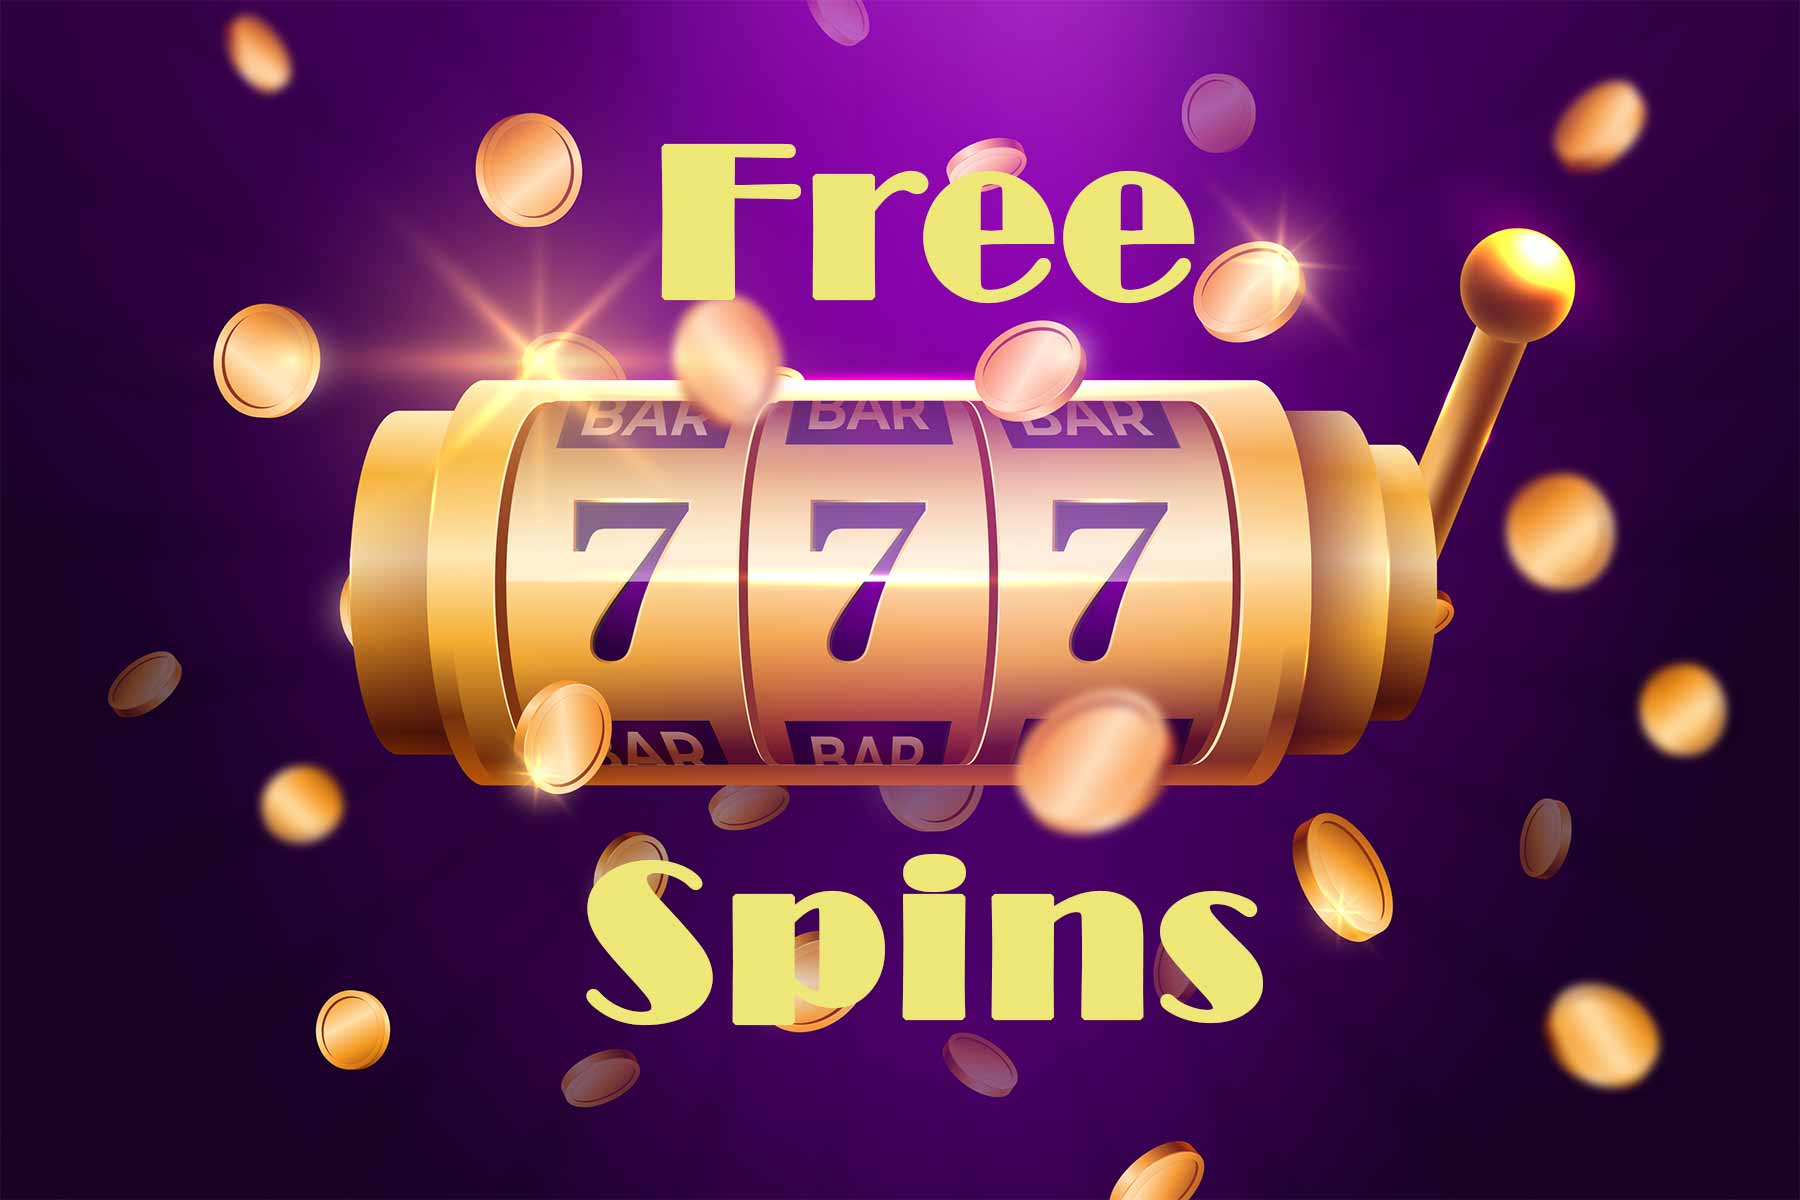 Free spins no deposit required